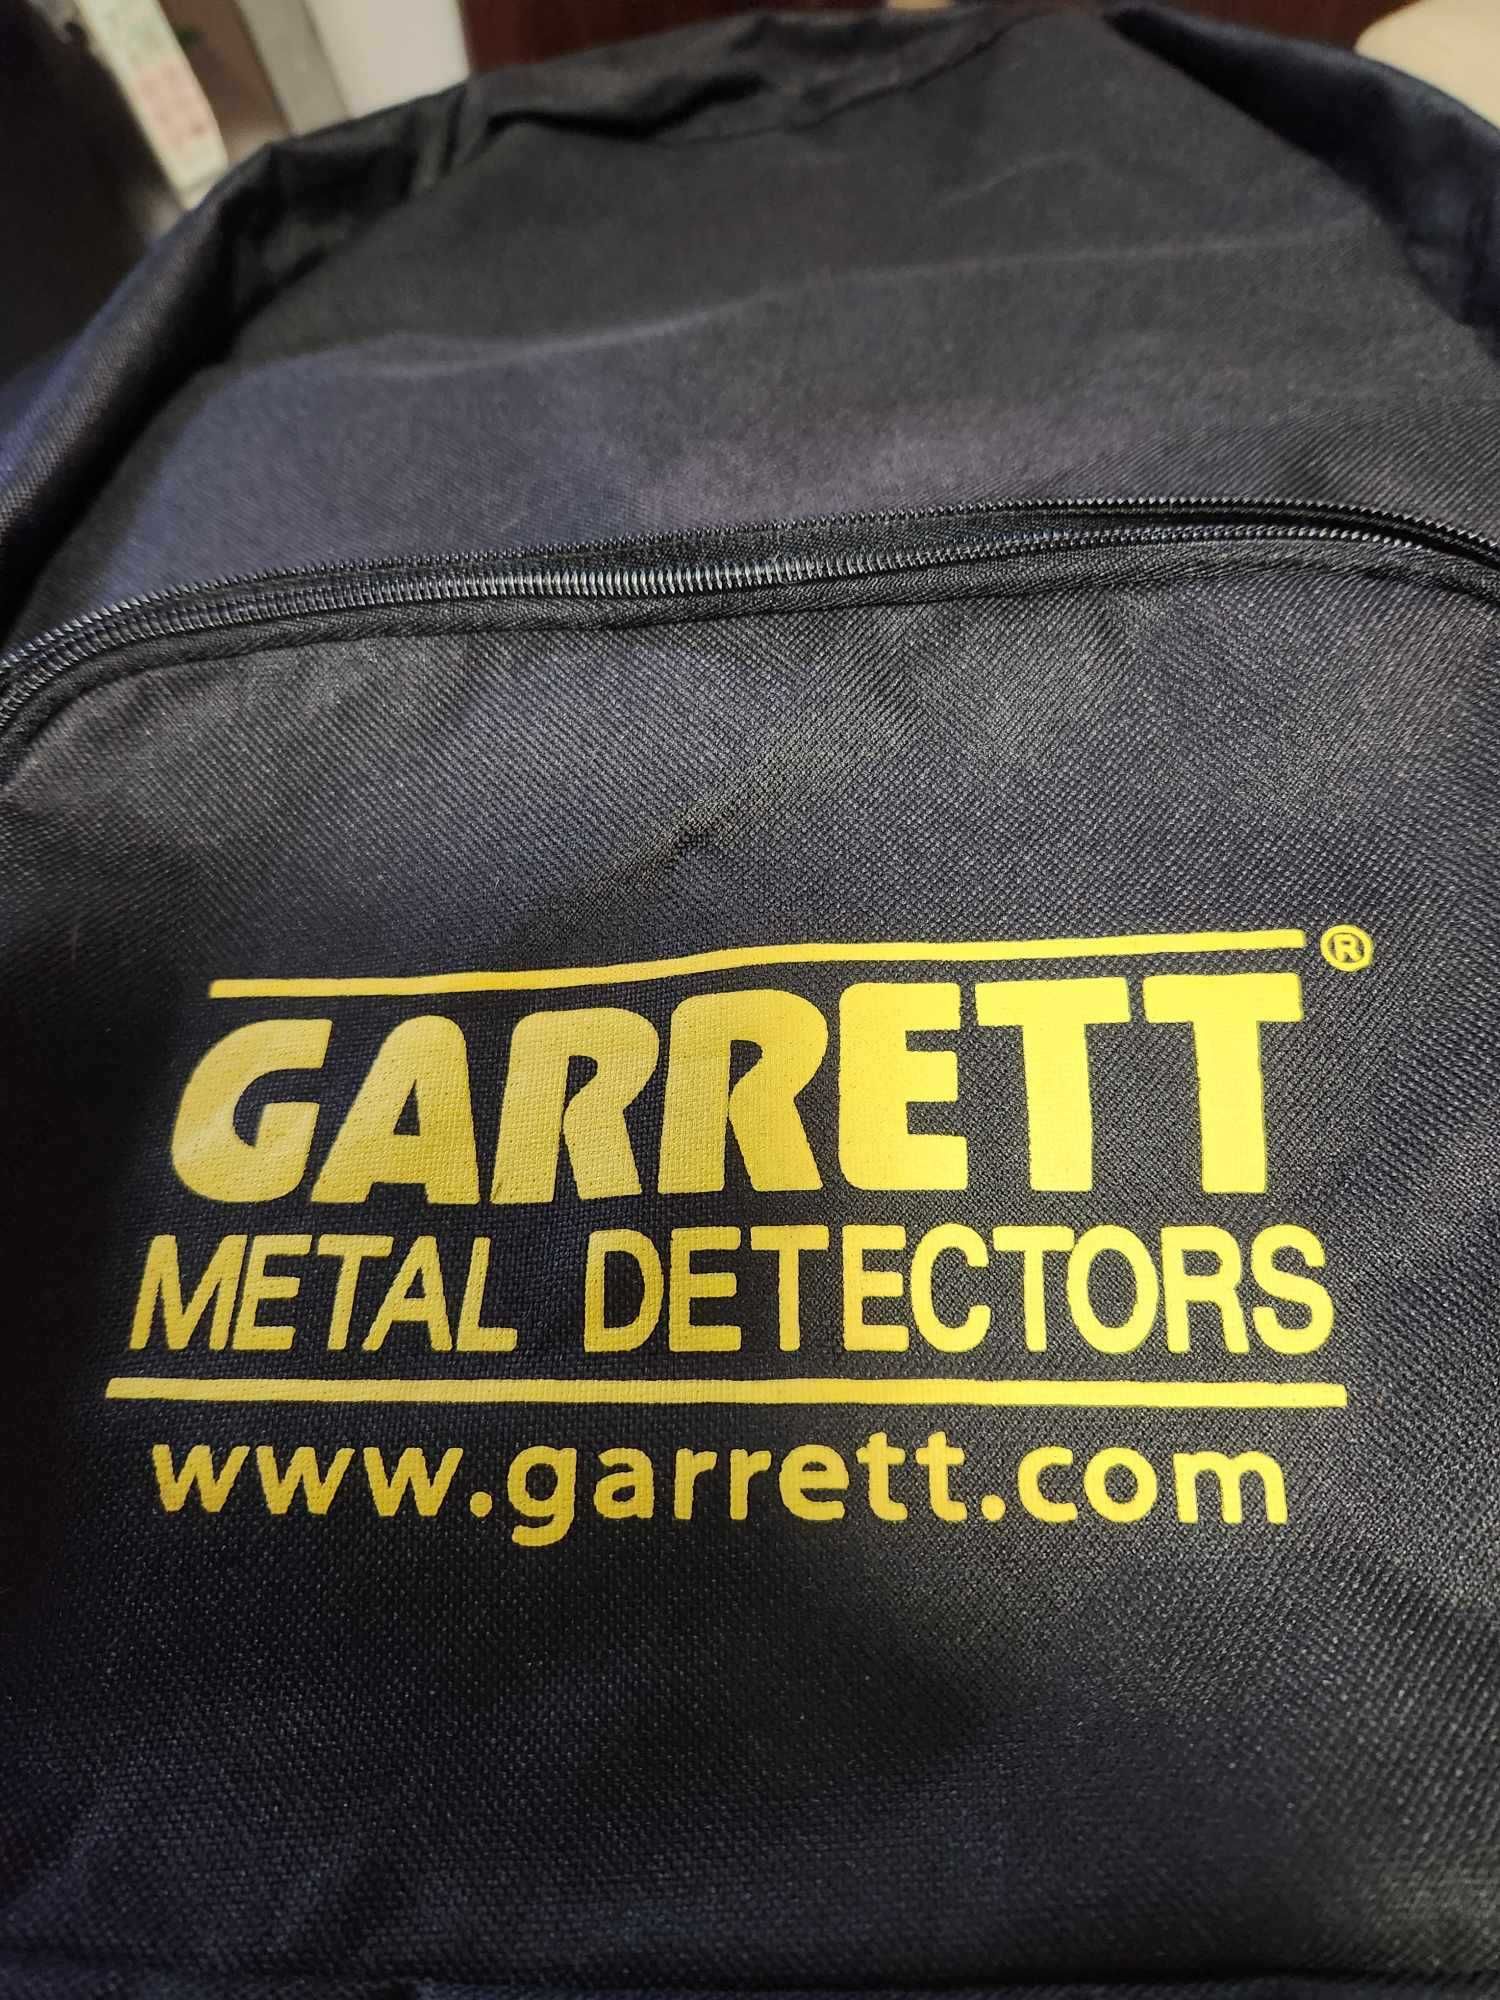 Plecak Garrett na wykrywacz metali znaleziska - czarny bdb